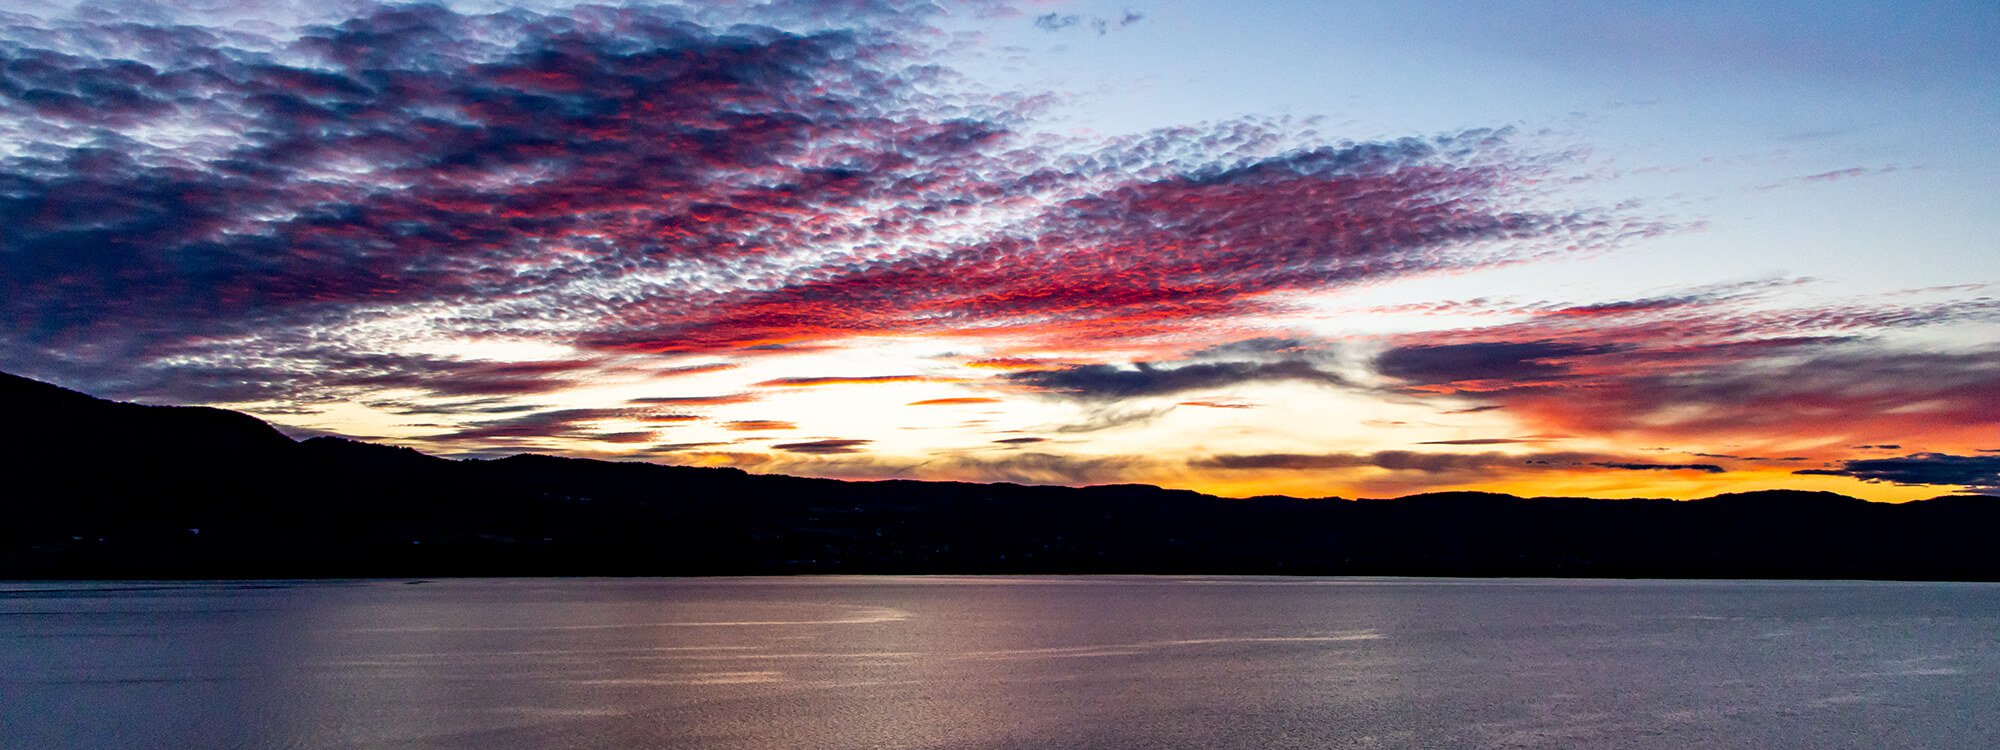 Reise nach Oslo mit einem spektakulären Sonnenuntergang in wunderschönen Farben und Nuancen